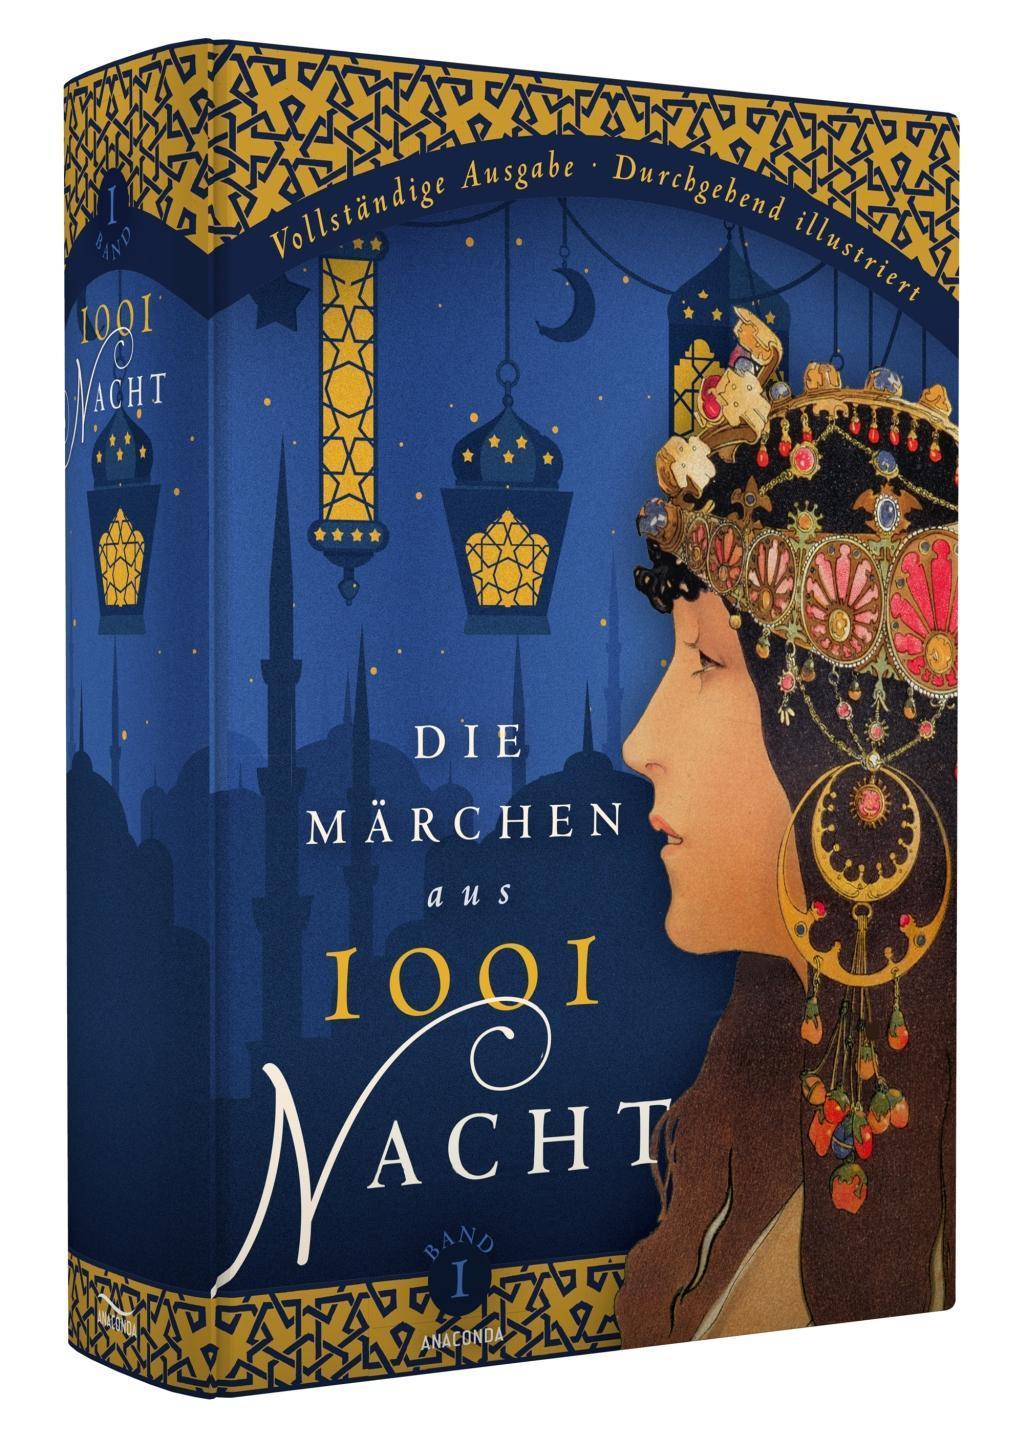 1001 Nacht Märchen Figuren | DE Maerchen